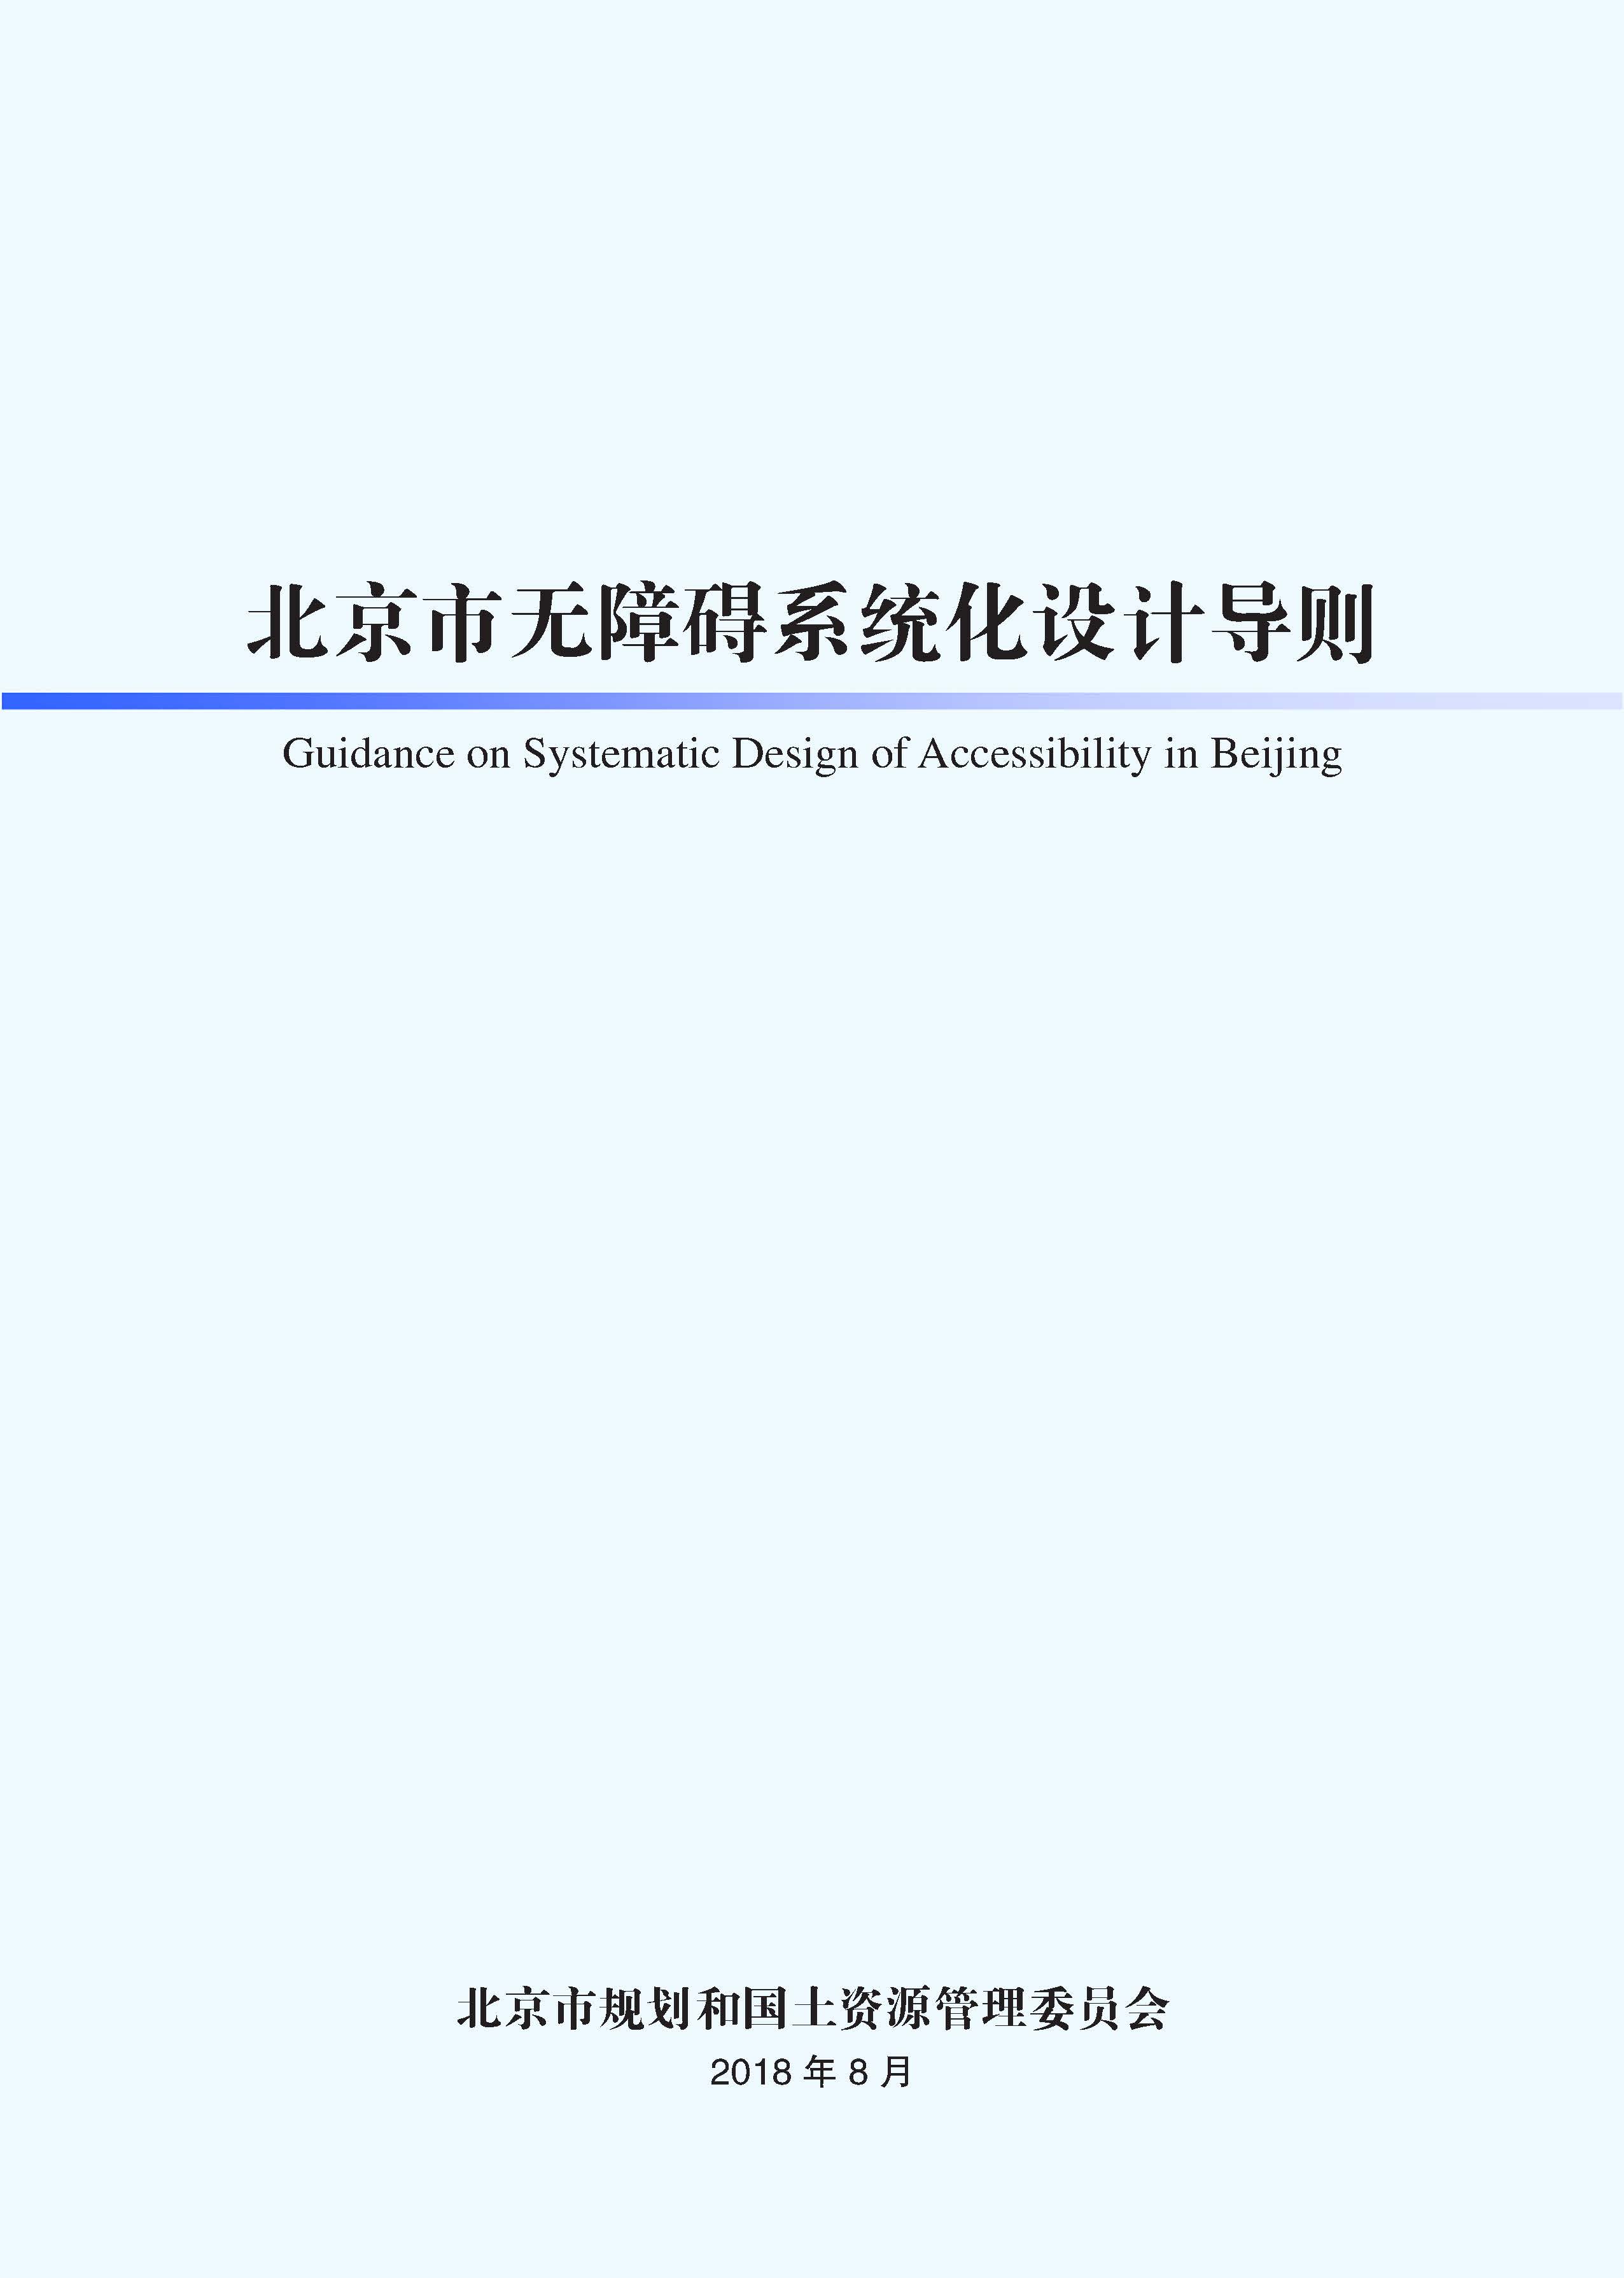 北京市无障碍系统化设计导则（封皮）.jpg